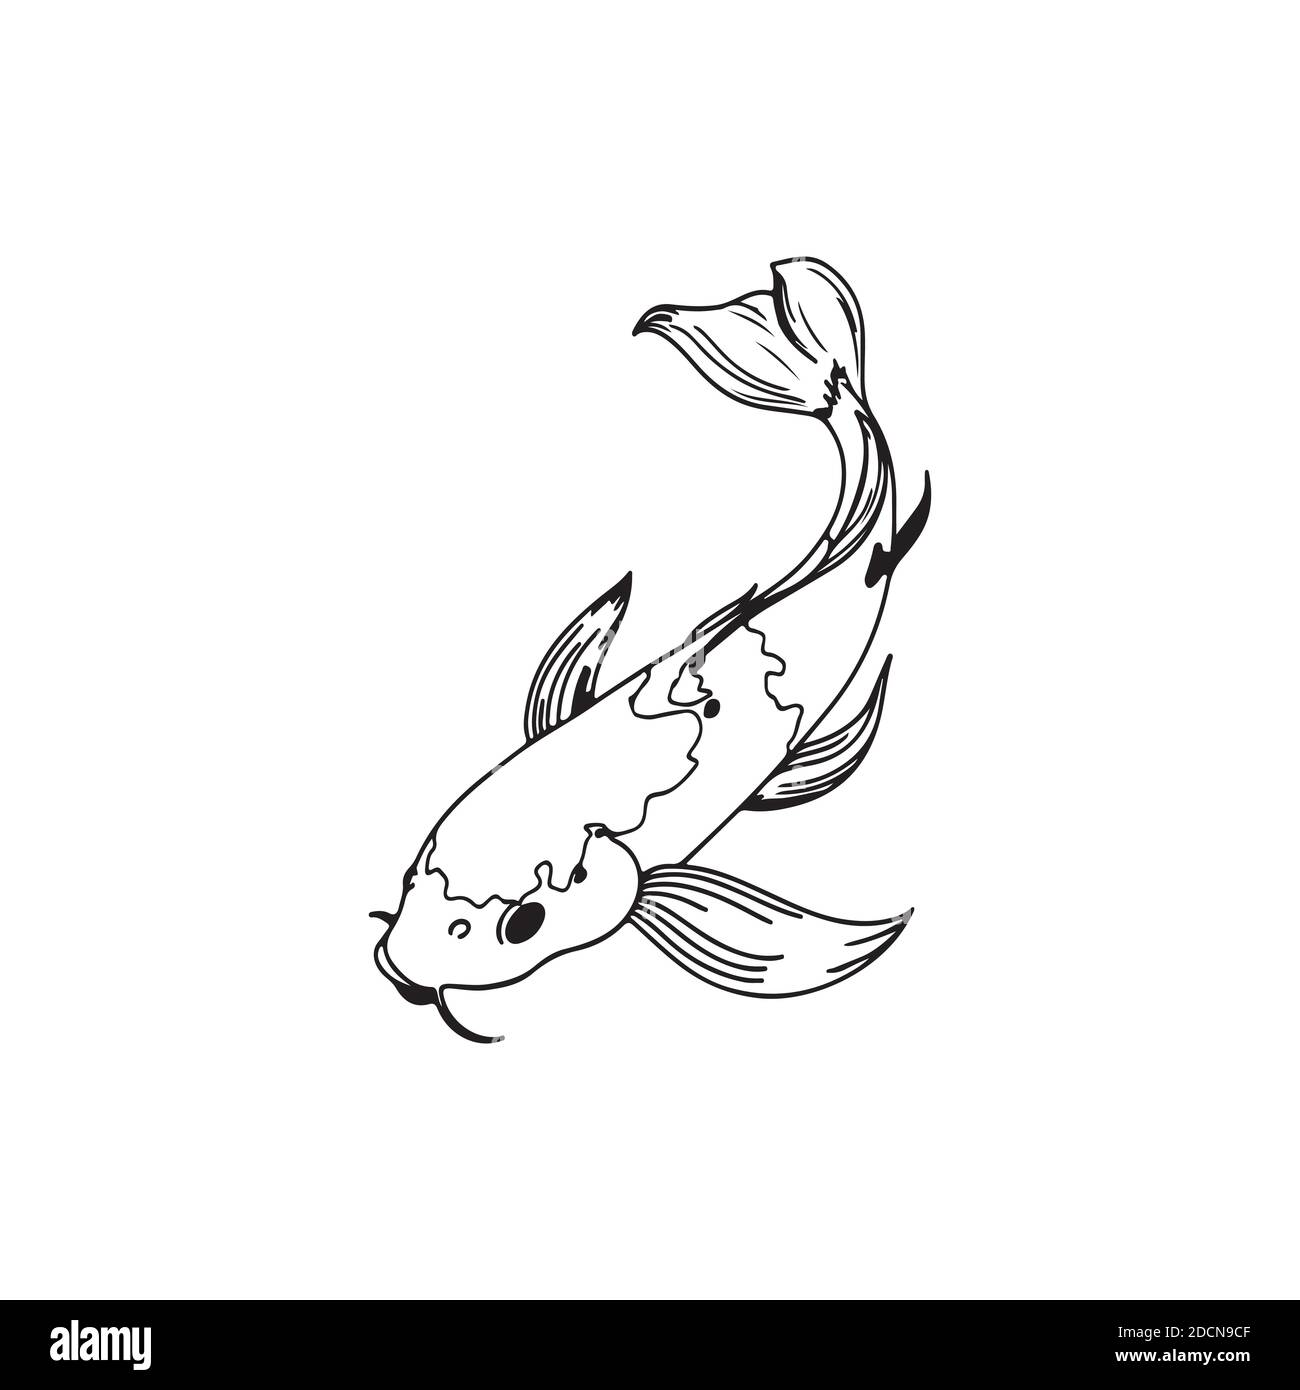 Eine schöne Koi Karpfen Fisch Illustration in monochrom. Symbol der Liebe,  Freundschaft und Wohlstand. Karpfen Tattoo Freihand Stock-Vektorgrafik -  Alamy